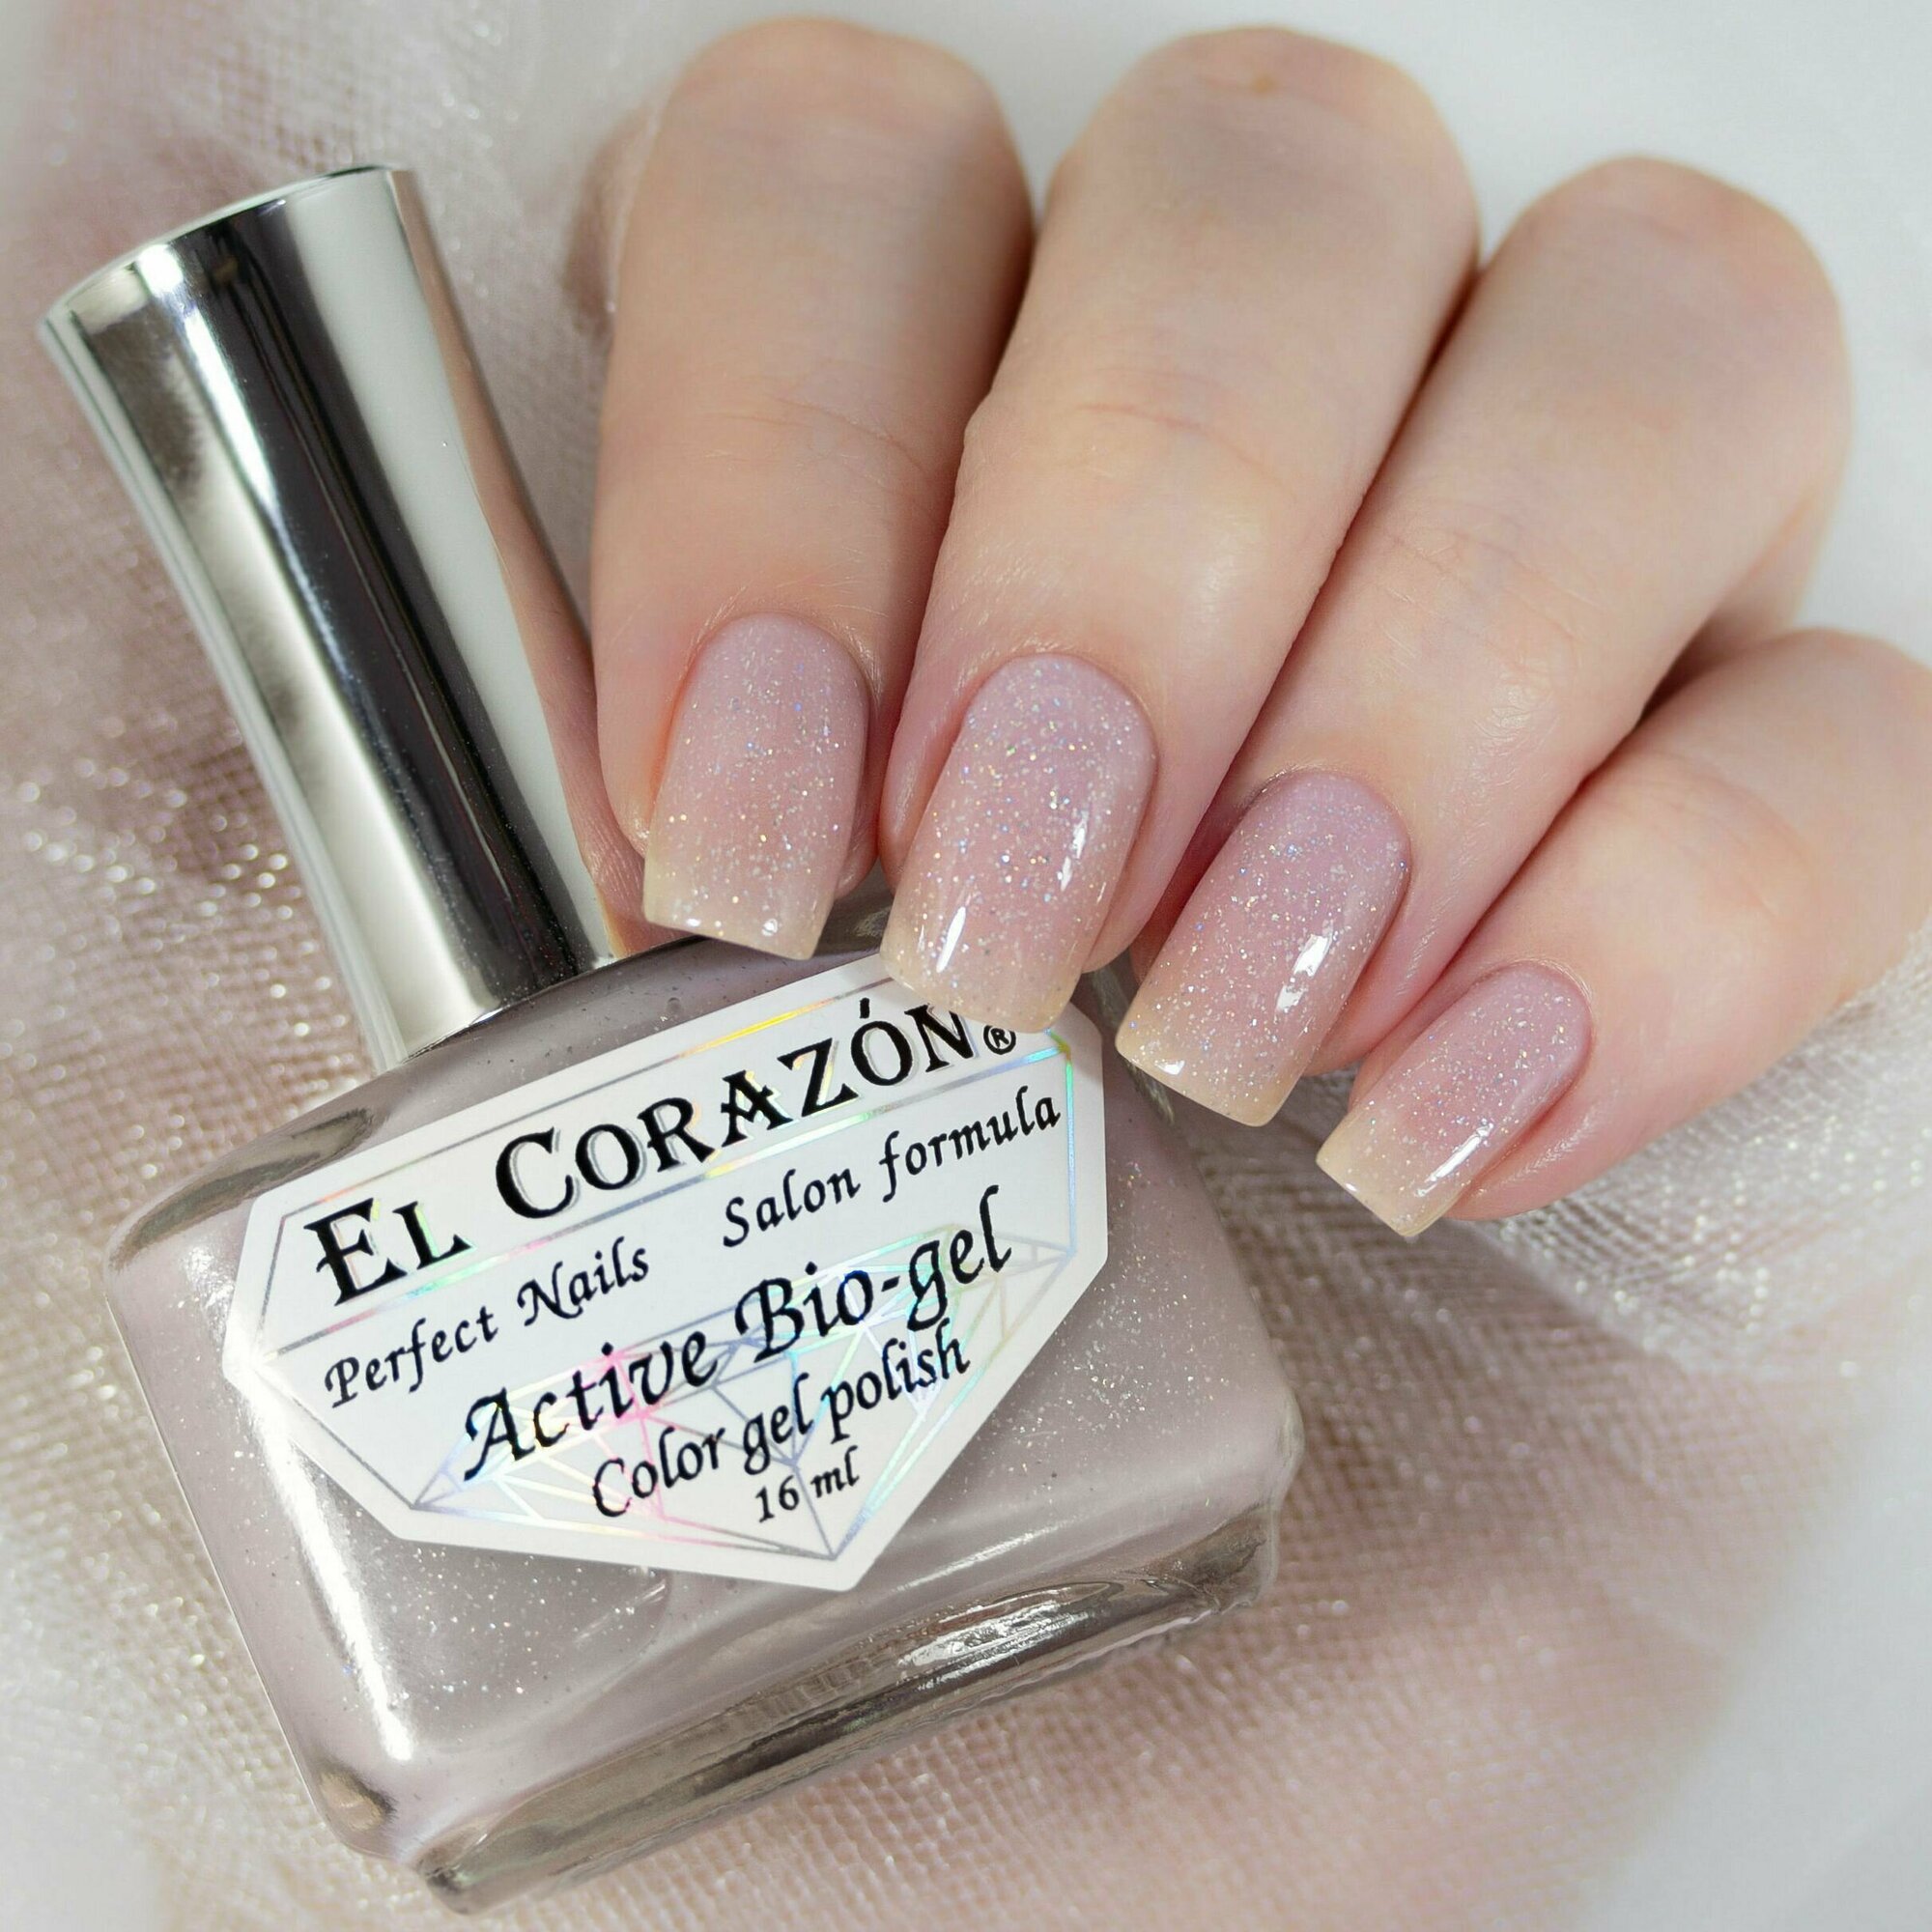 El Corazon лечебный лак для ногтей Активный Био-гель №423/2044 Shimmer 16 мл